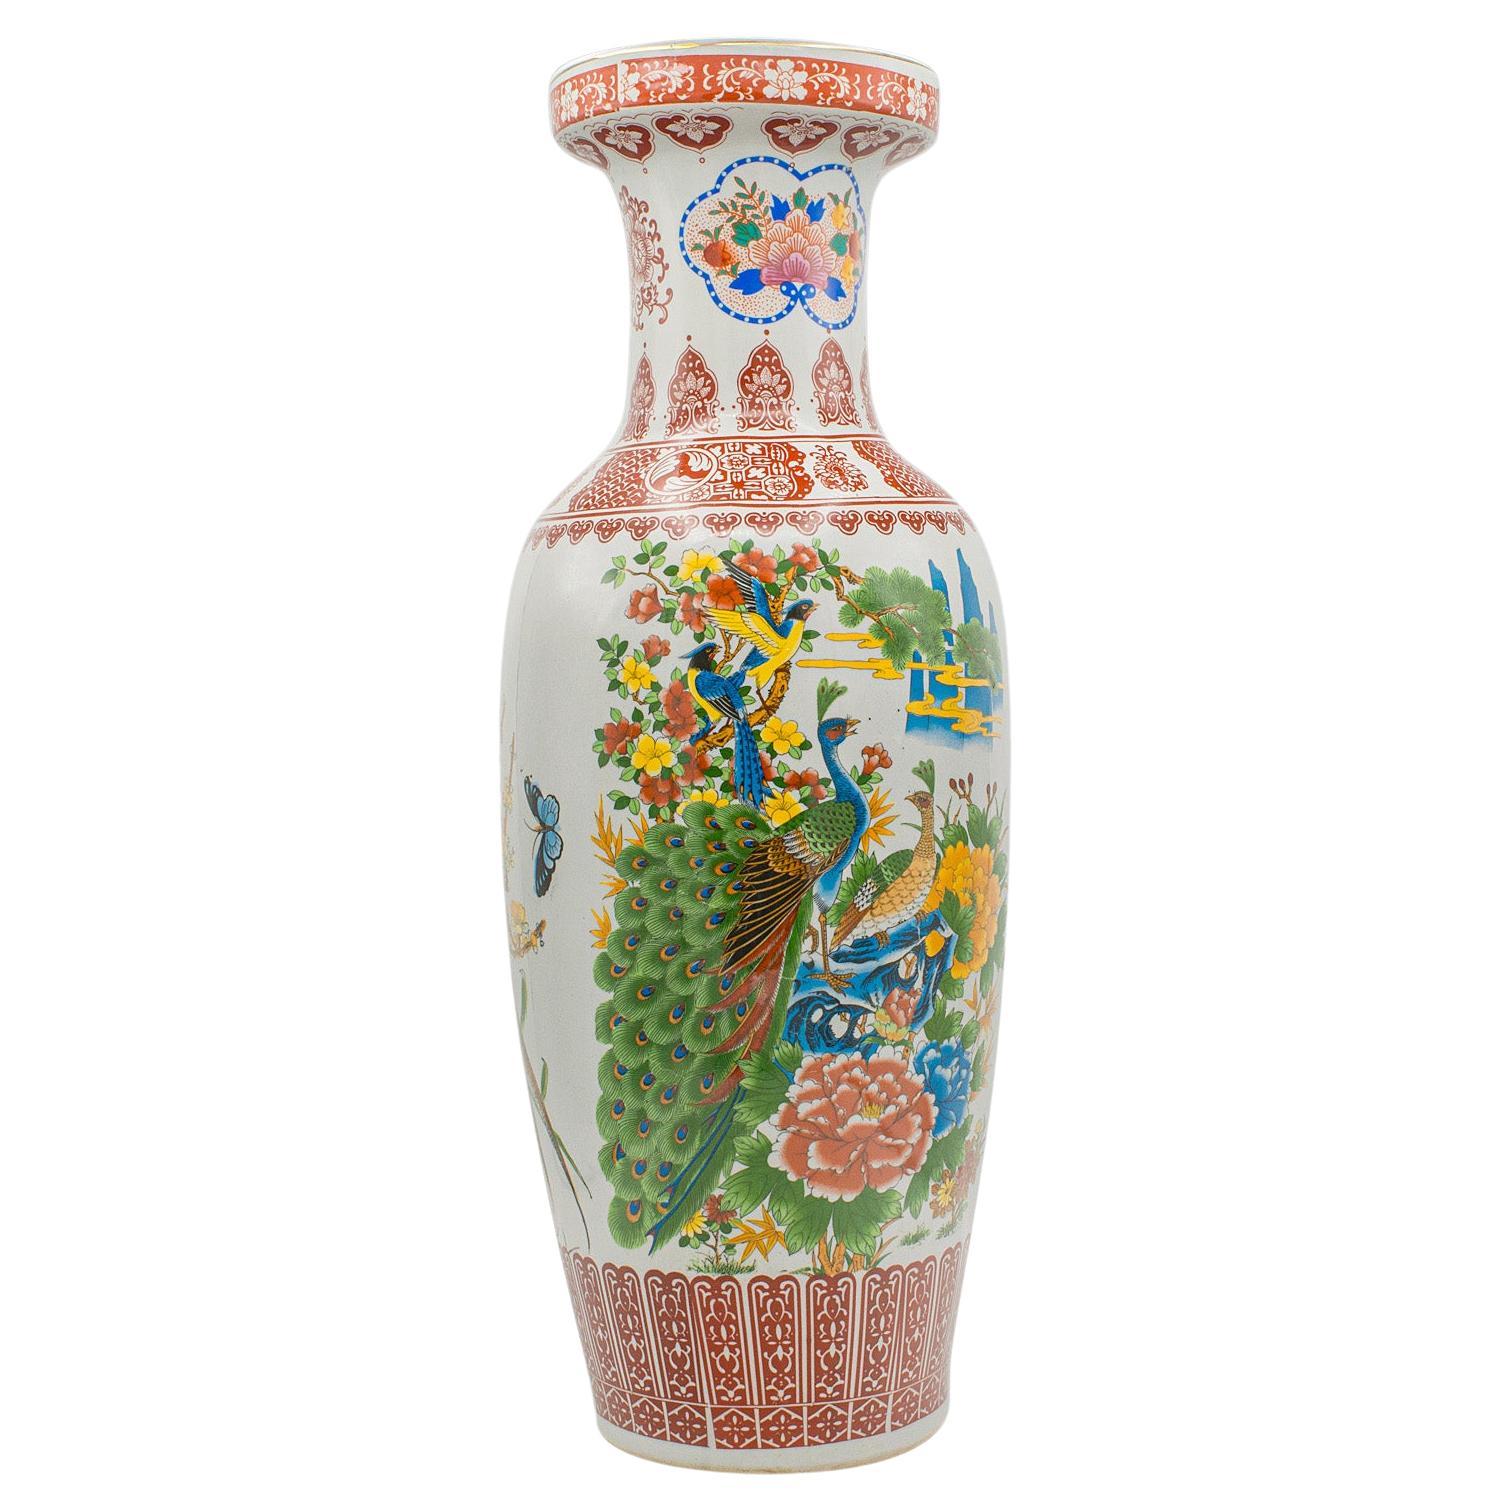 Grand vase paon vintage chinois, céramique, urne à balustre, goût Art Déco, 1950